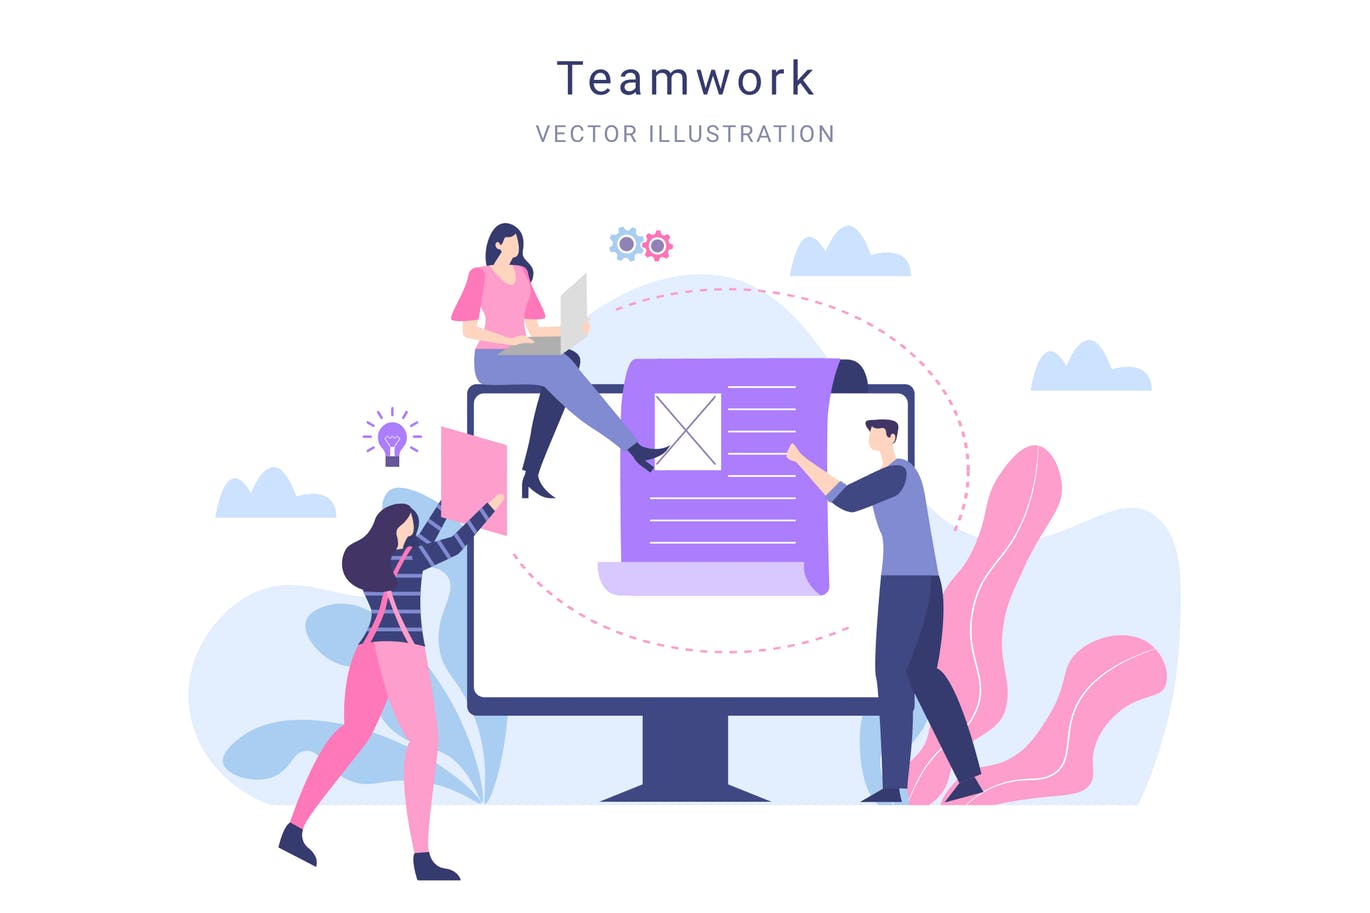 团队合作主题网站&APP设计矢量插画素材 Teamwork Vector Illustration插图